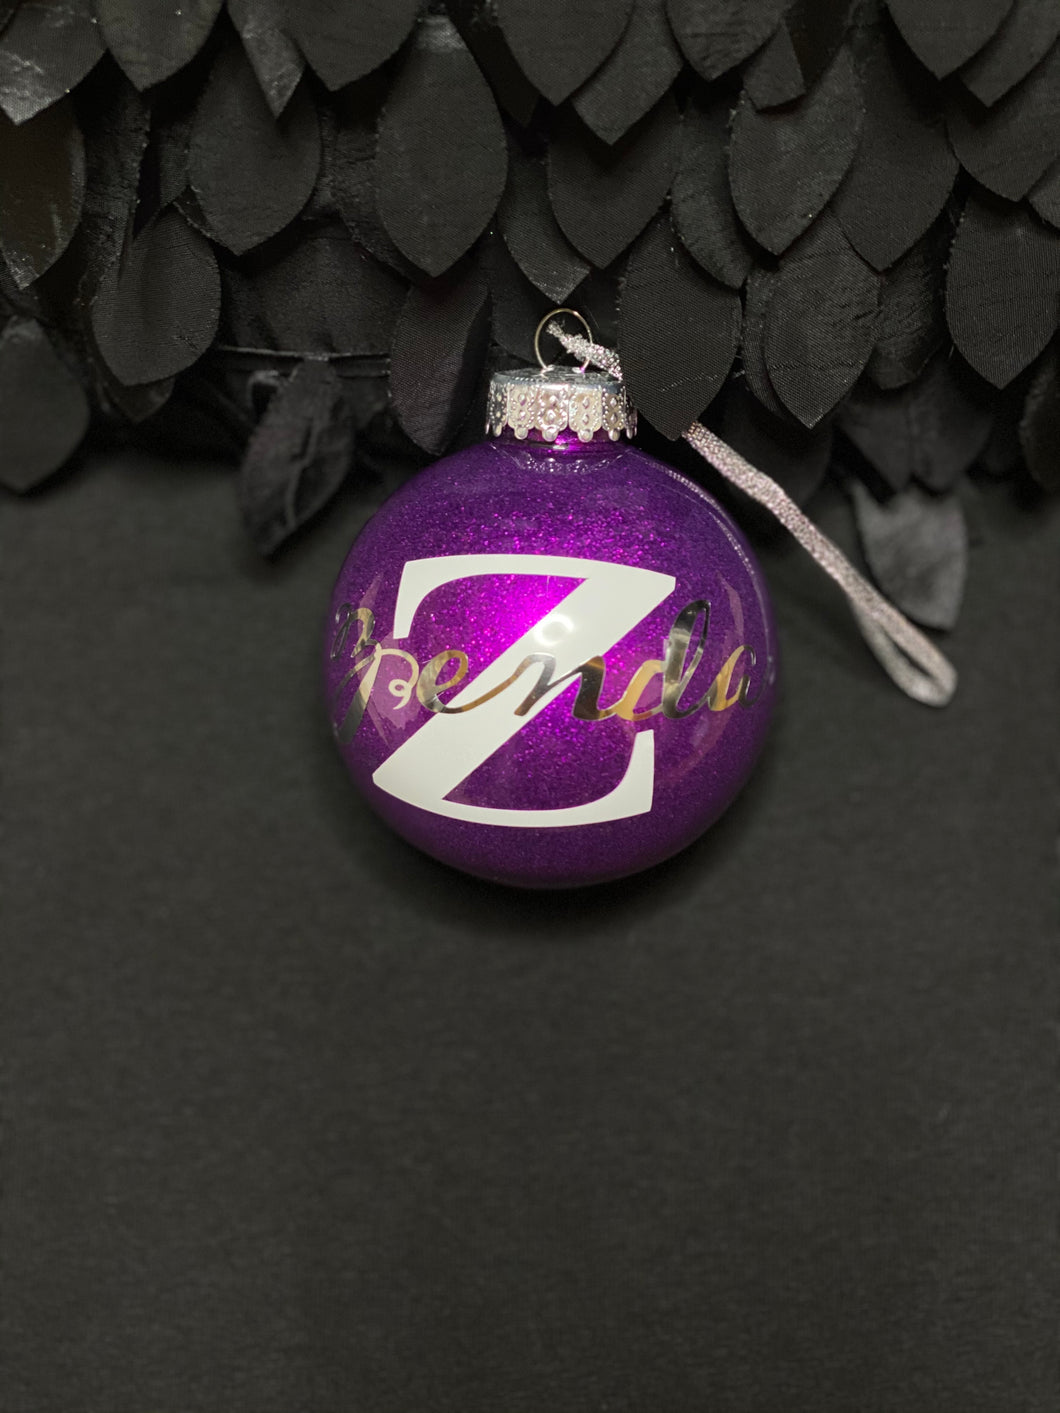 Ms. Zenda’s ornament 💜